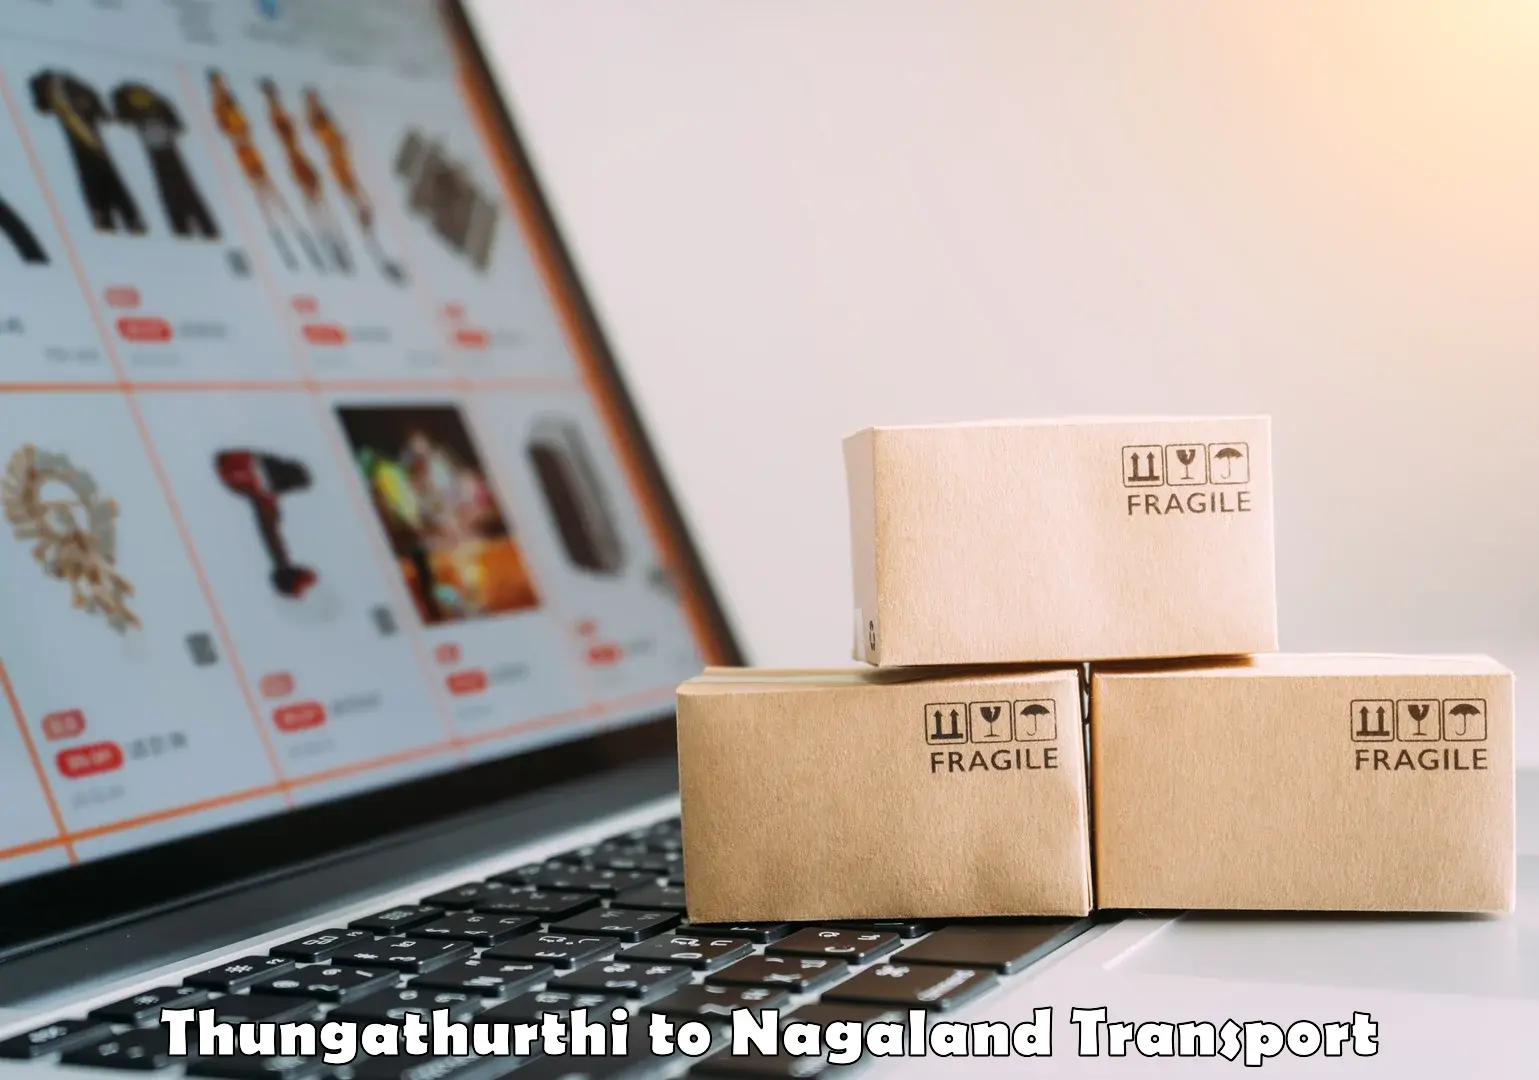 Cargo transportation services Thungathurthi to Nagaland